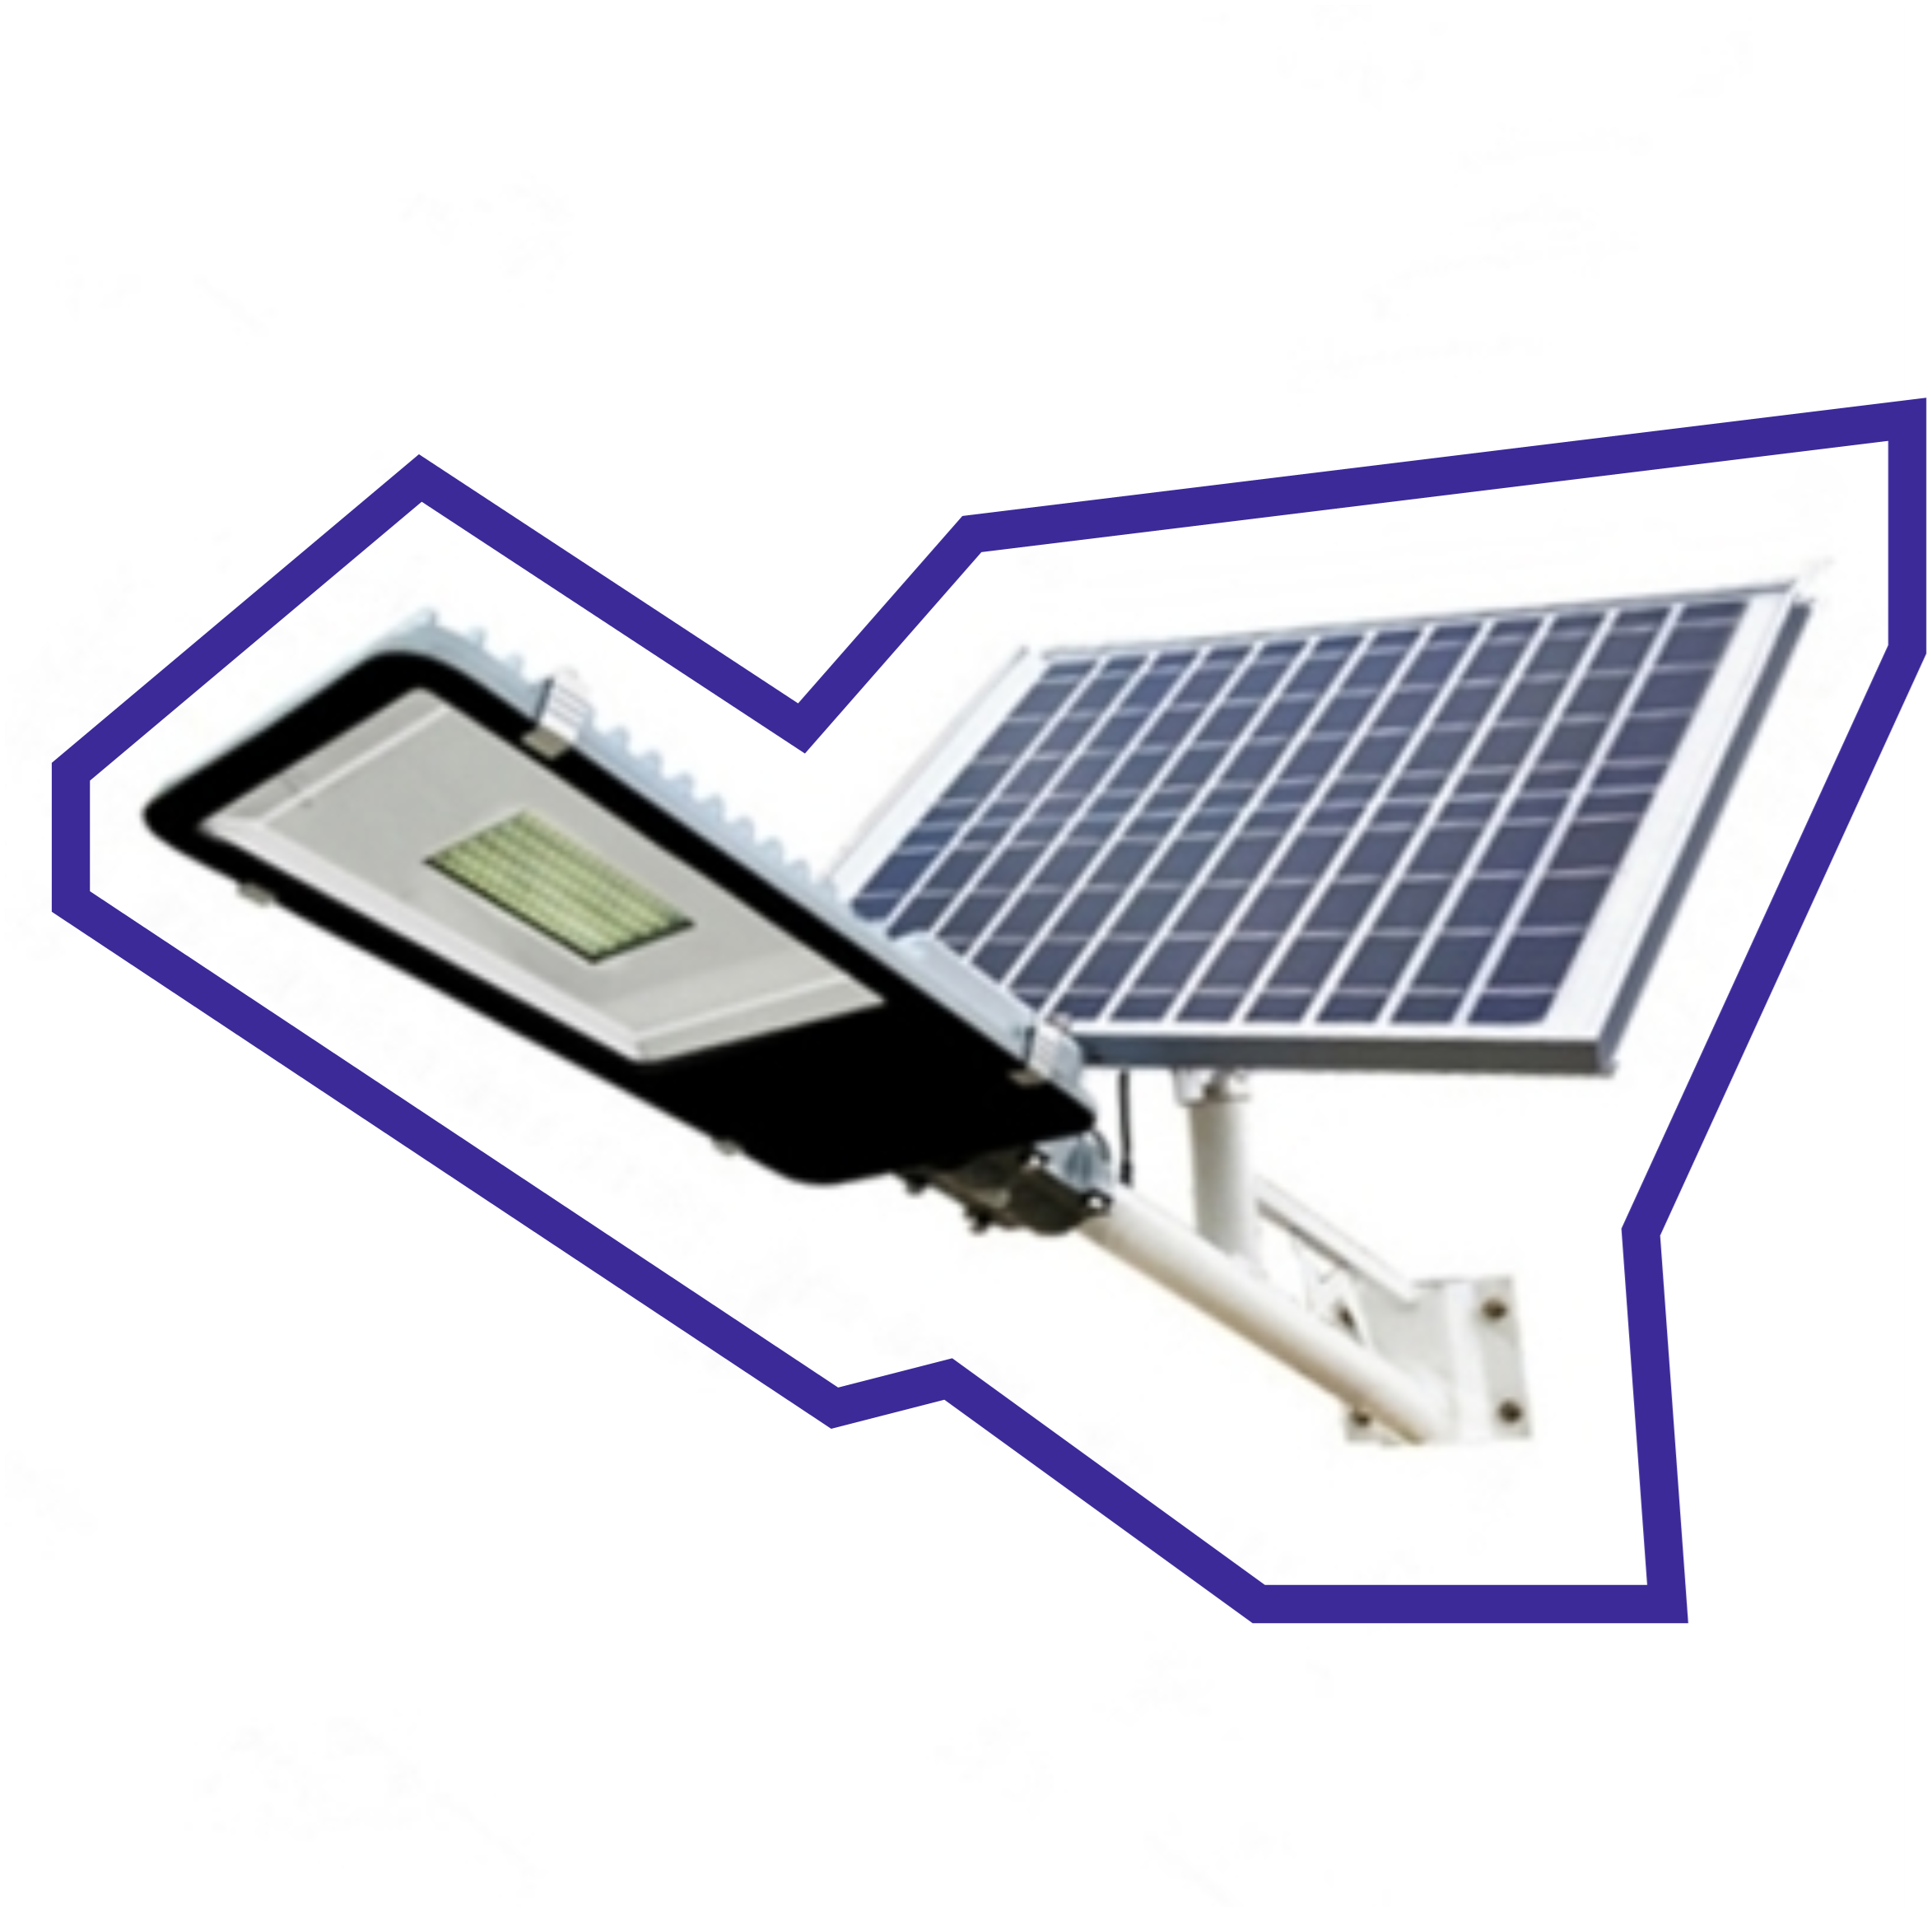 Разработка энергосберегающего светодиодного уличного светильника с системой автоматического ориентирования солнечных модулей на отечественной компонентной базе